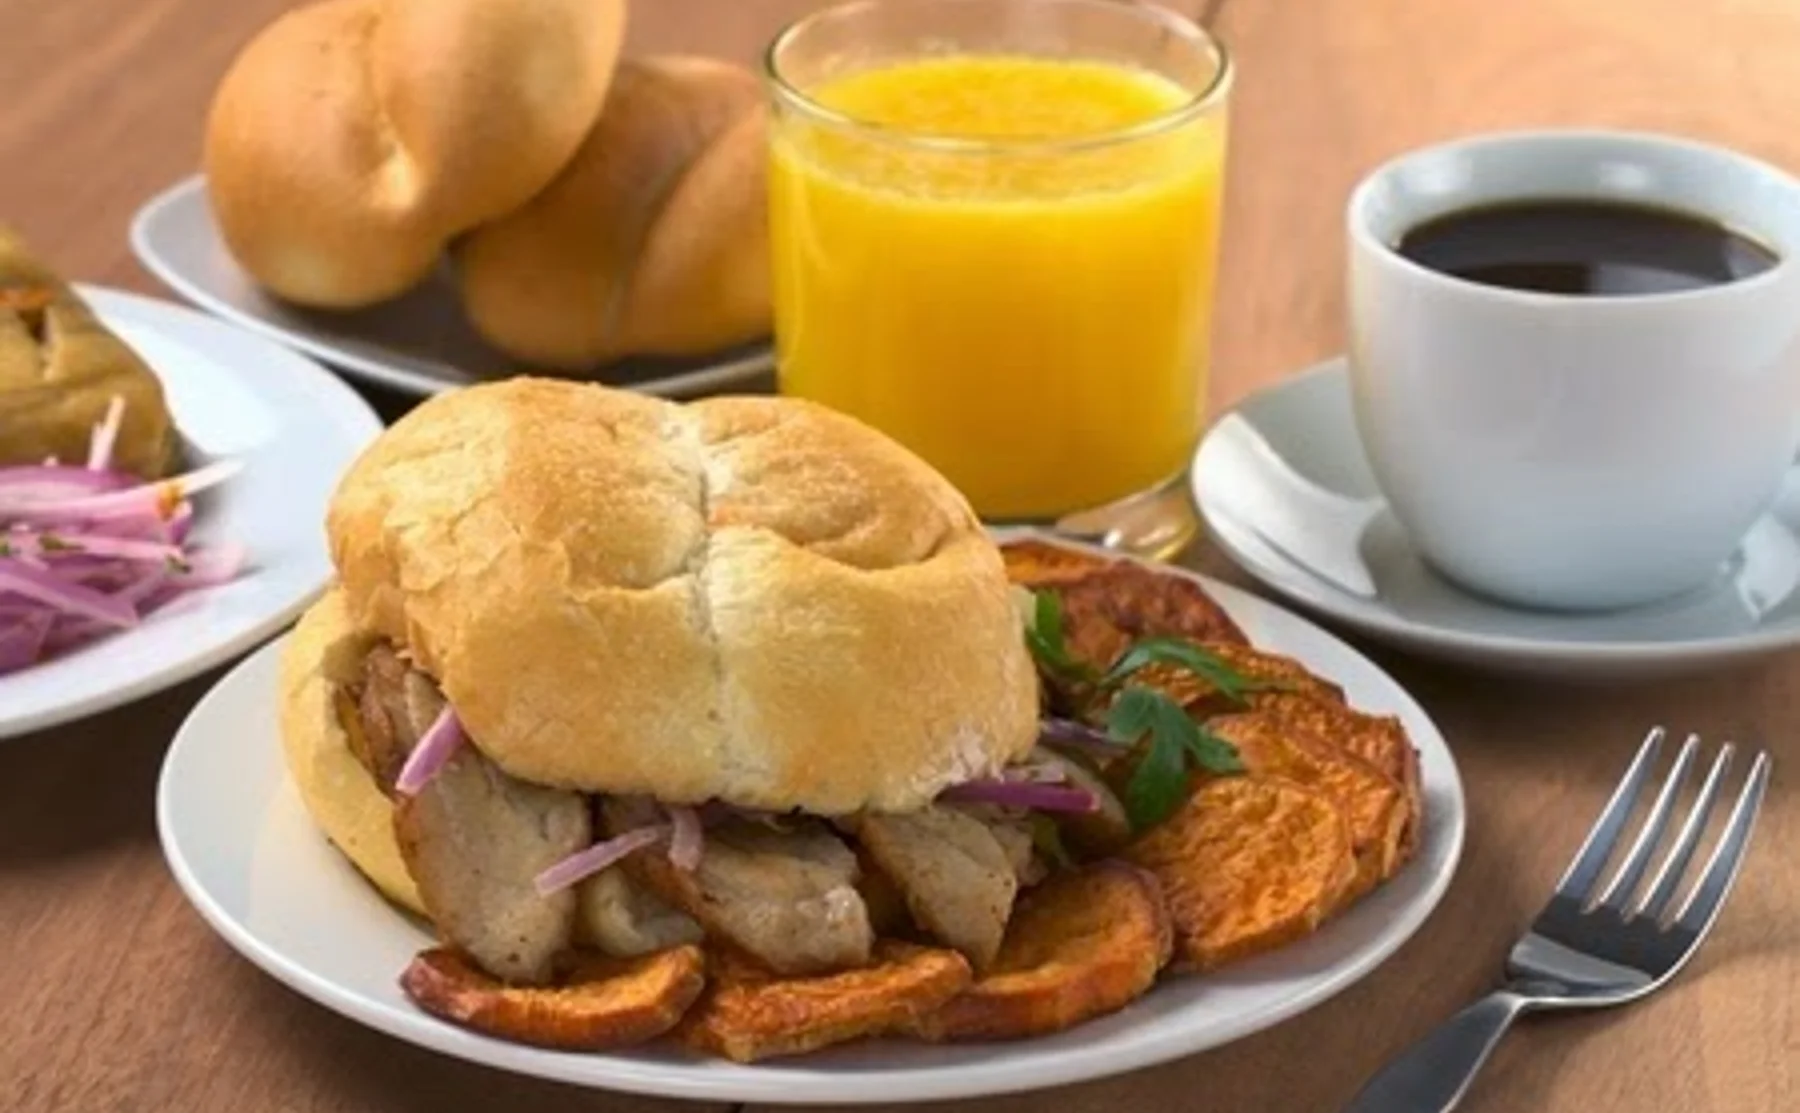 Desayuno Criollo - Traditional Peruvian Breakfast - 416191